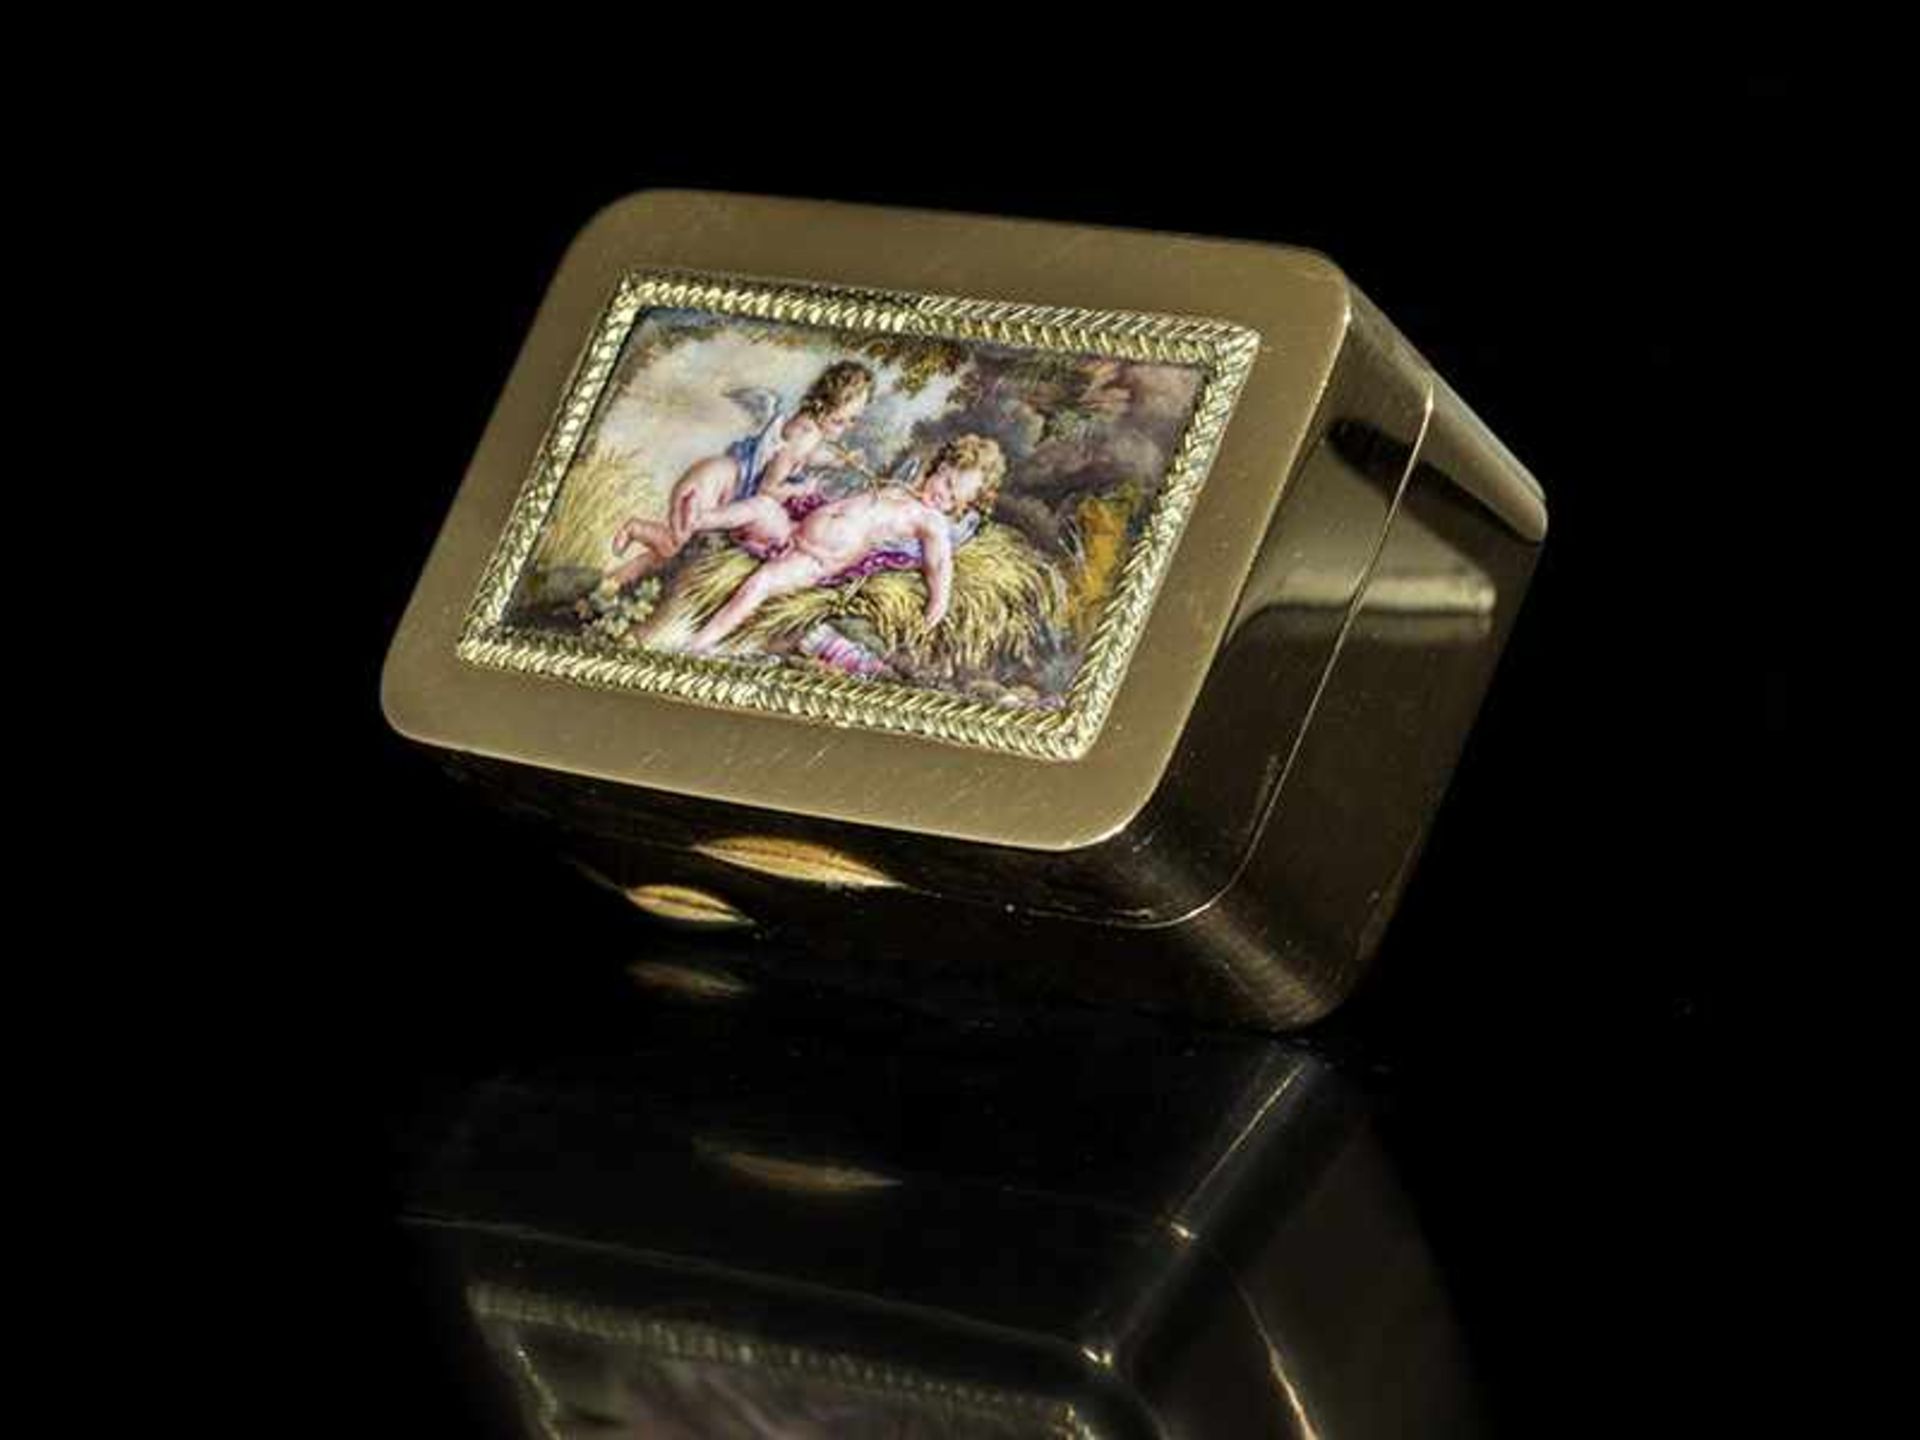 Römische Golddose mit Puttominiatur 2 x 5 x 3,3 cm. Gewicht: 61 g. Steckkante mit